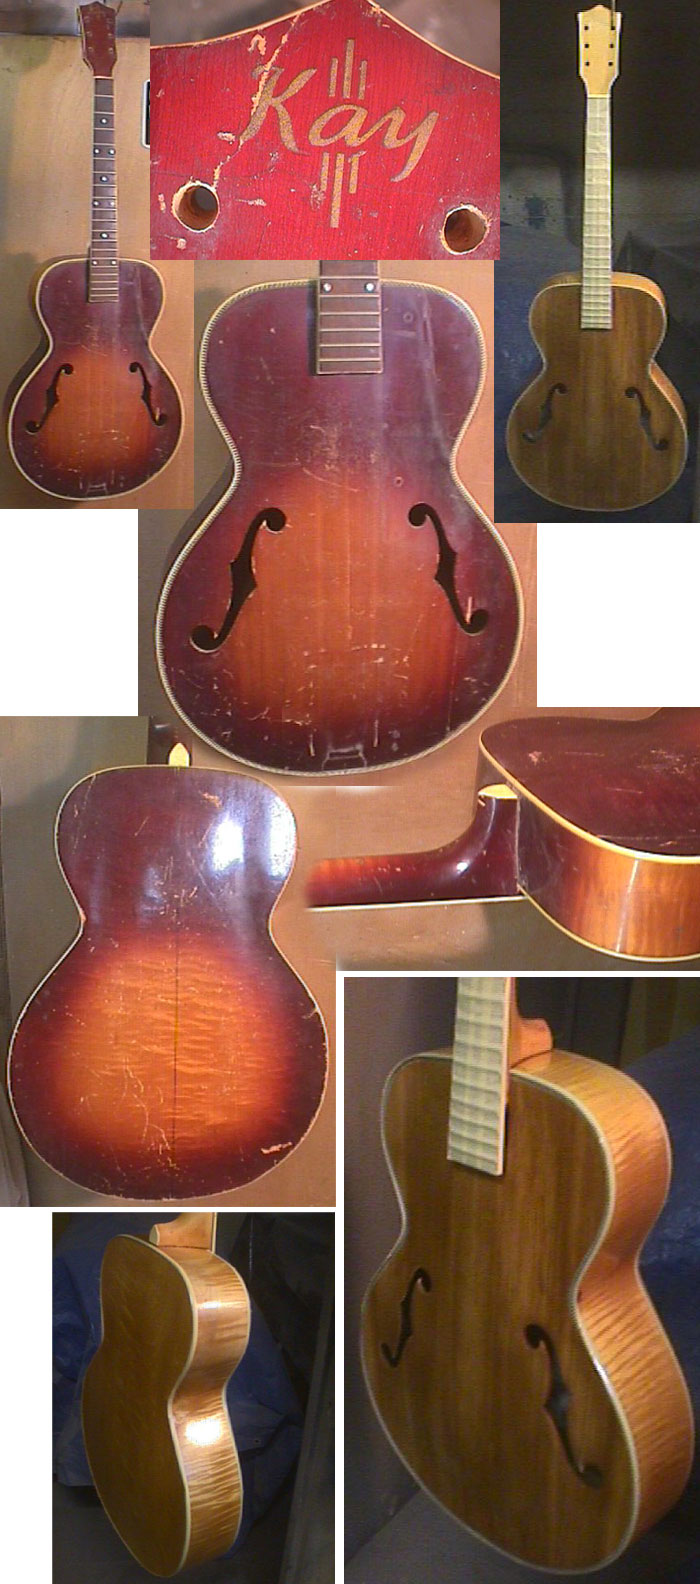 Kay Guitar Before Restoration